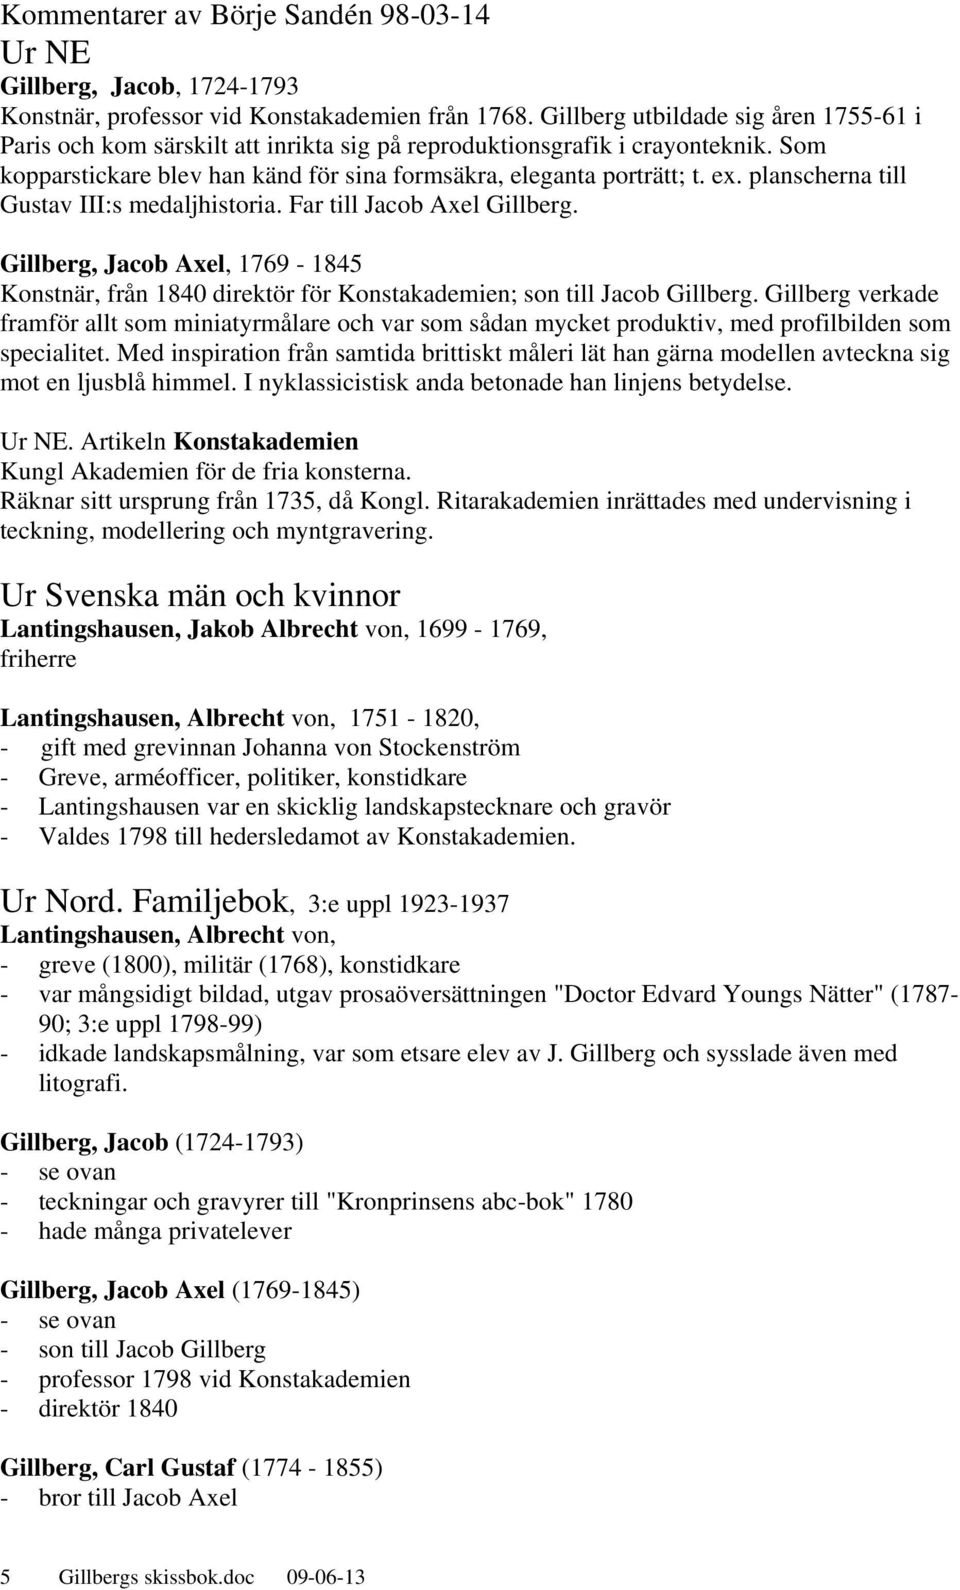 planscherna till Gustav III:s medaljhistoria. Far till Jacob Axel Gillberg. Gillberg, Jacob Axel, 1769-1845 Konstnär, från 1840 direktör för Konstakademien; son till Jacob Gillberg.